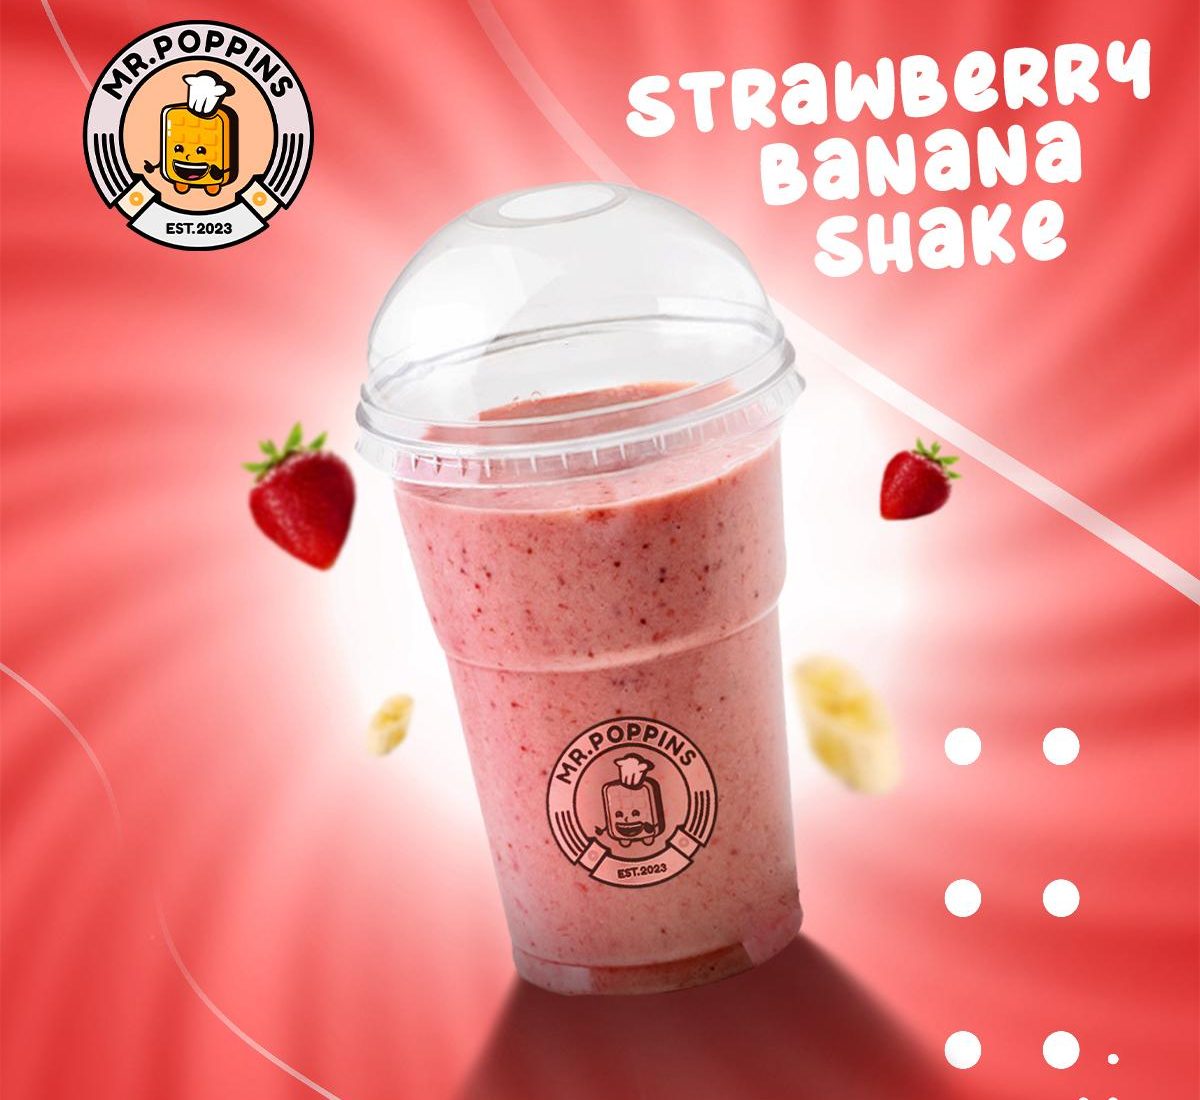 Strawberry Banana Shake